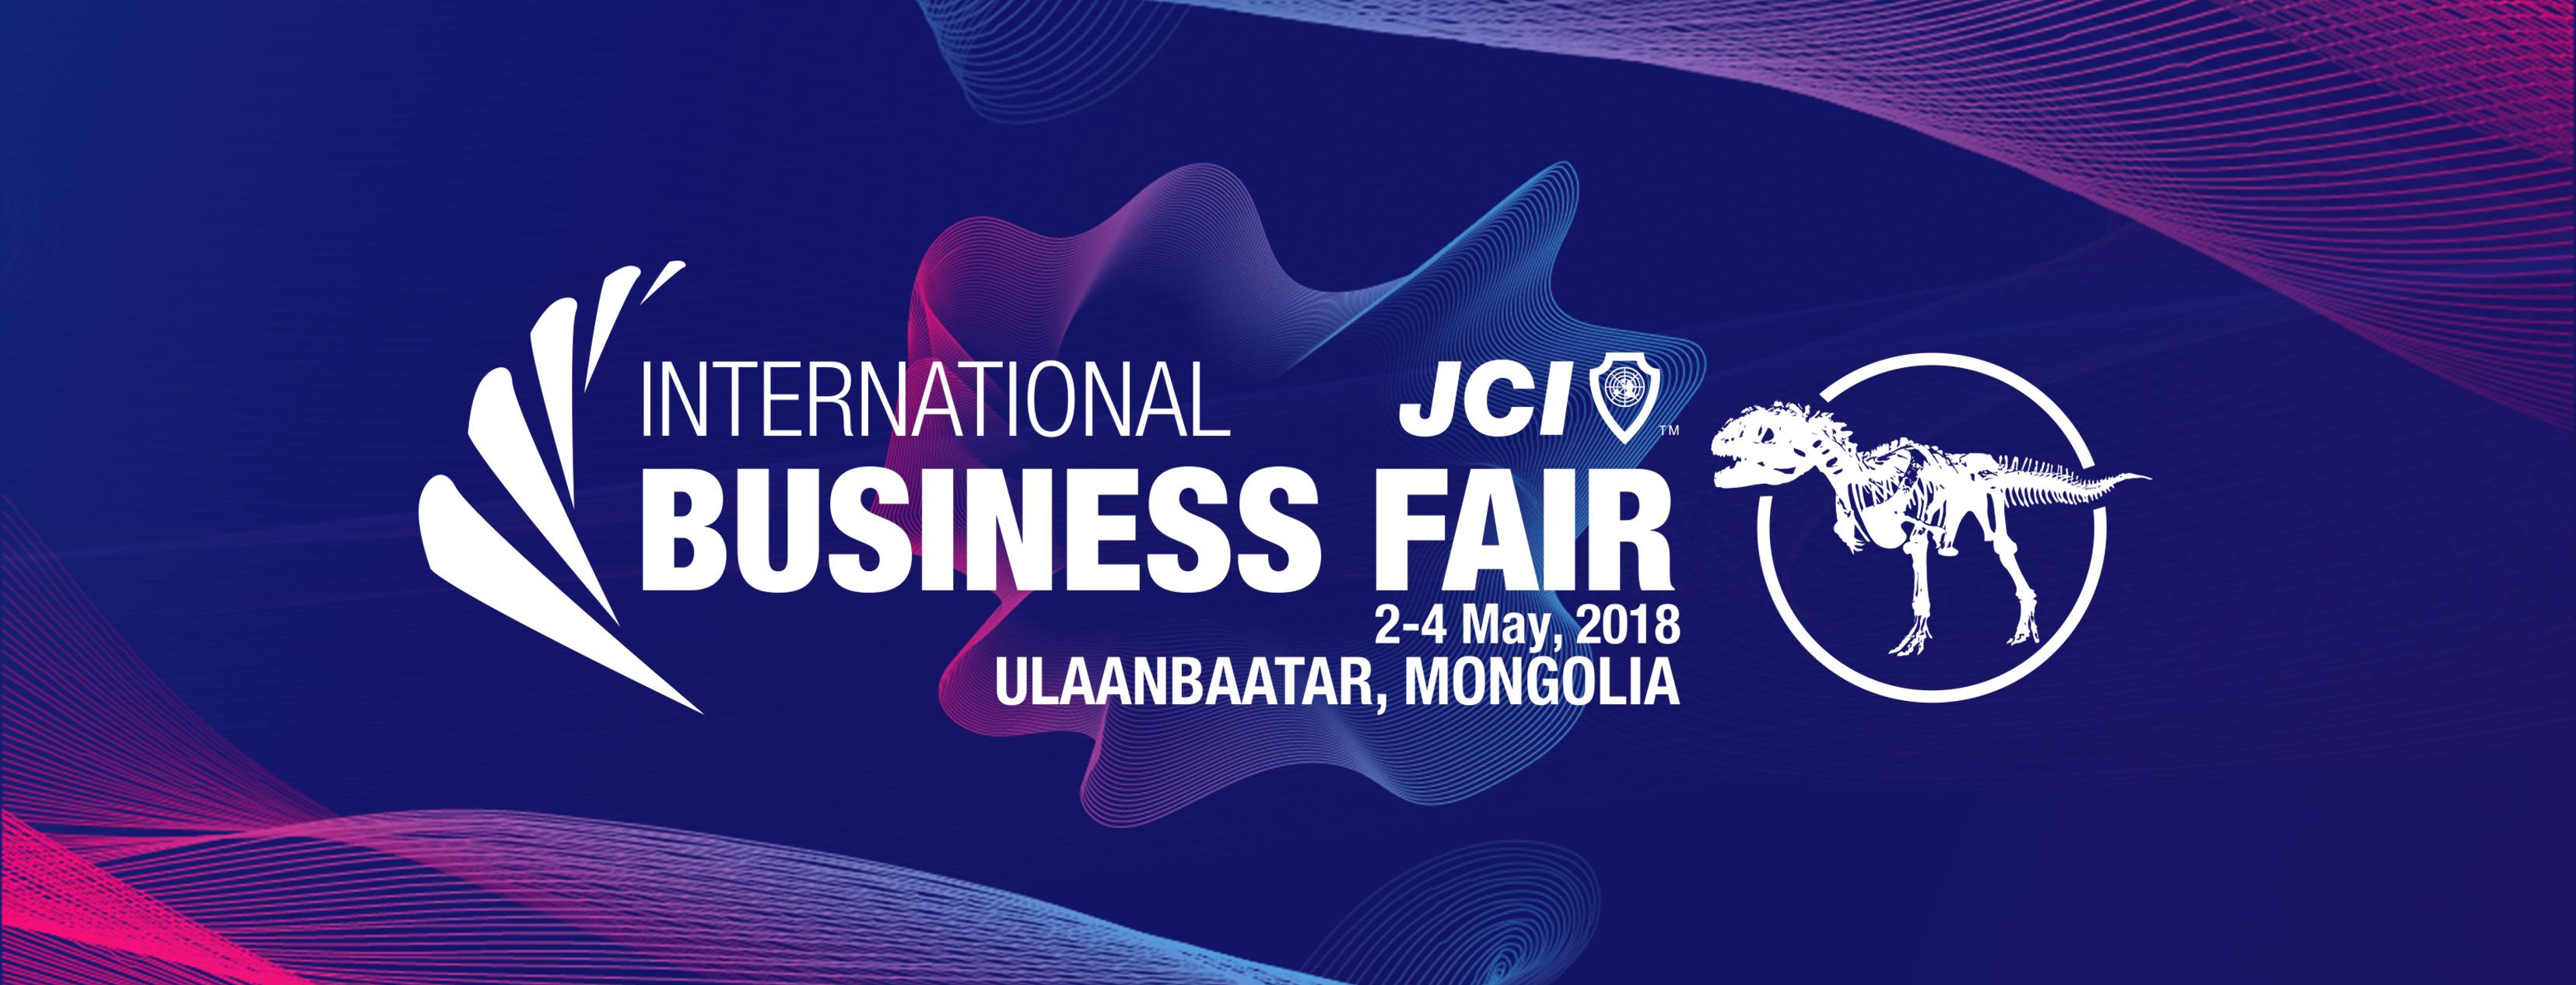 “2018 JCI INTERNATIONAL BUSINESS FAIR ”  үзэсгэлэнг зохион байгуулахад дэмжлэг үзүүллээ. 